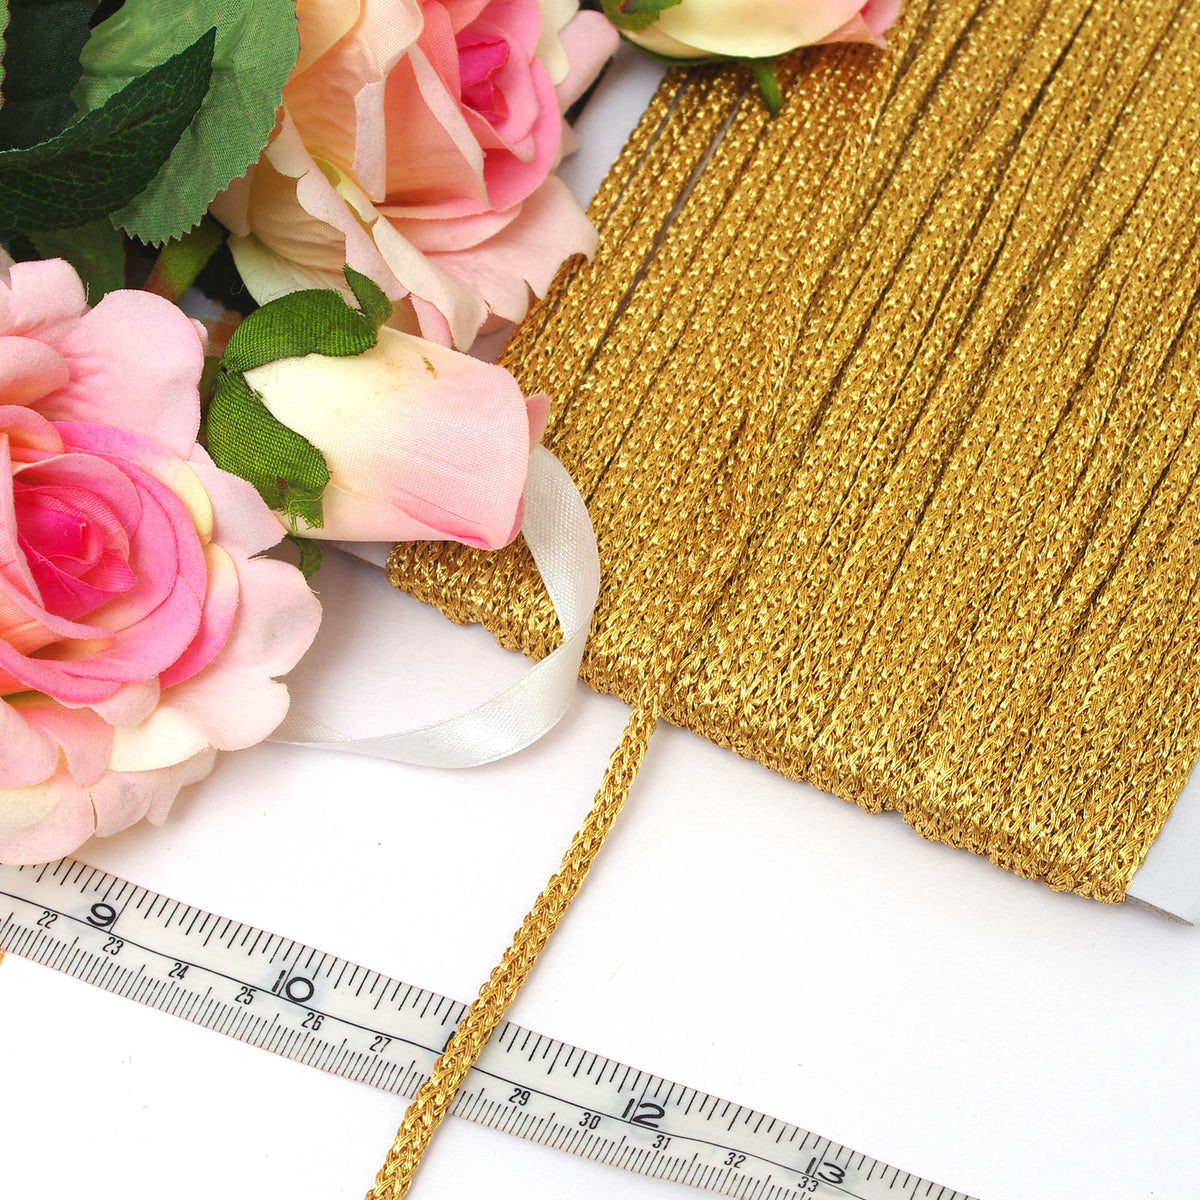 Zari Gold Rope Style Lace Braided Trim Meterware